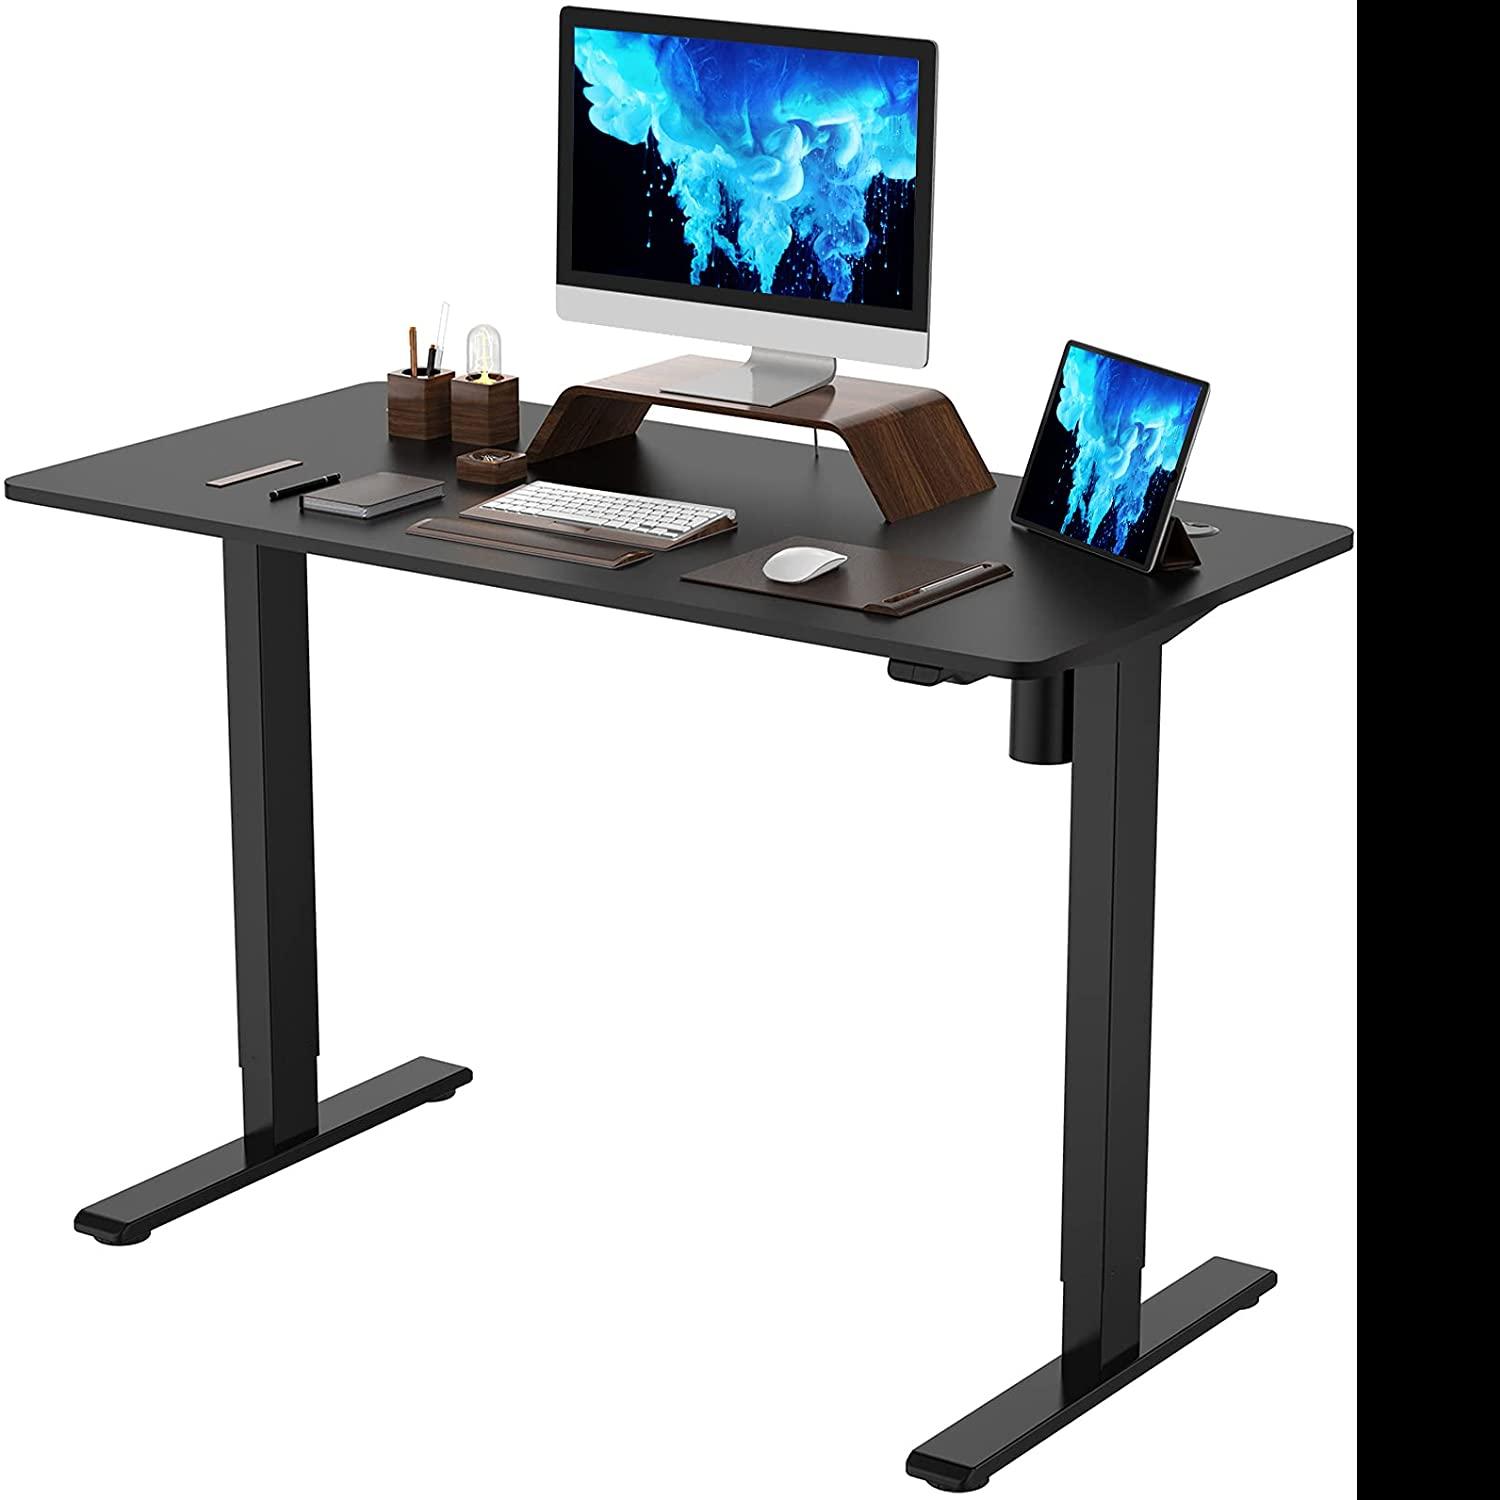 Flexispot Standing Desk Height Adjustable Desk for $199.99 Shipped